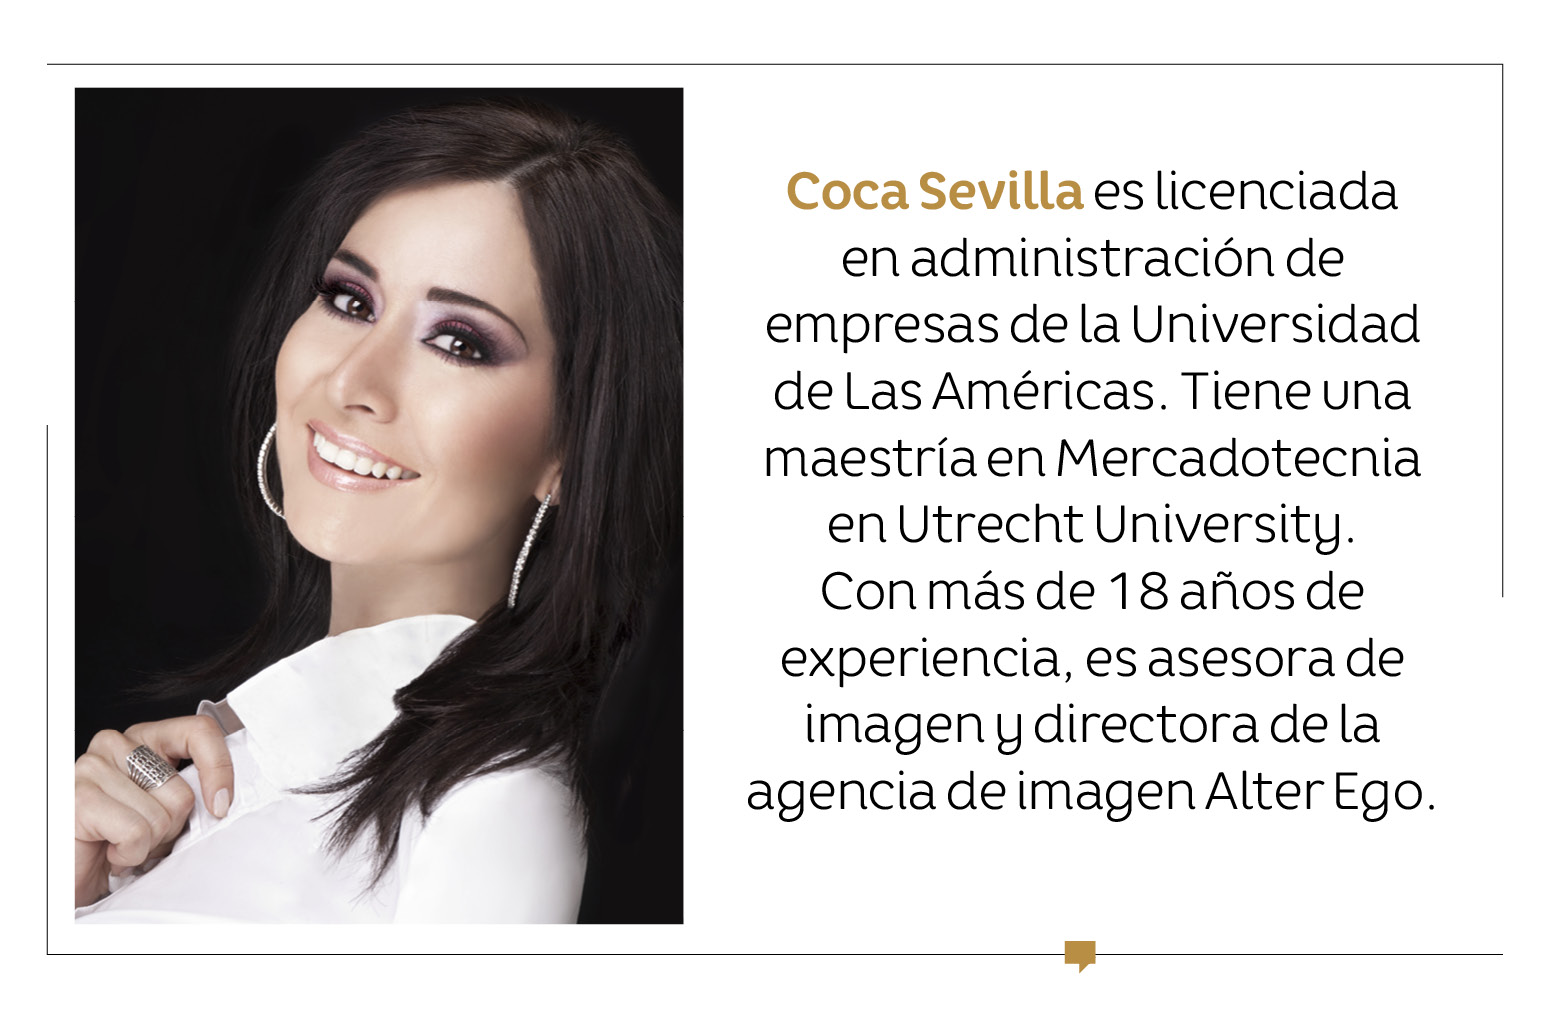 Coca Sevilla: "La vestimenta es una herramienta muy poderosa"